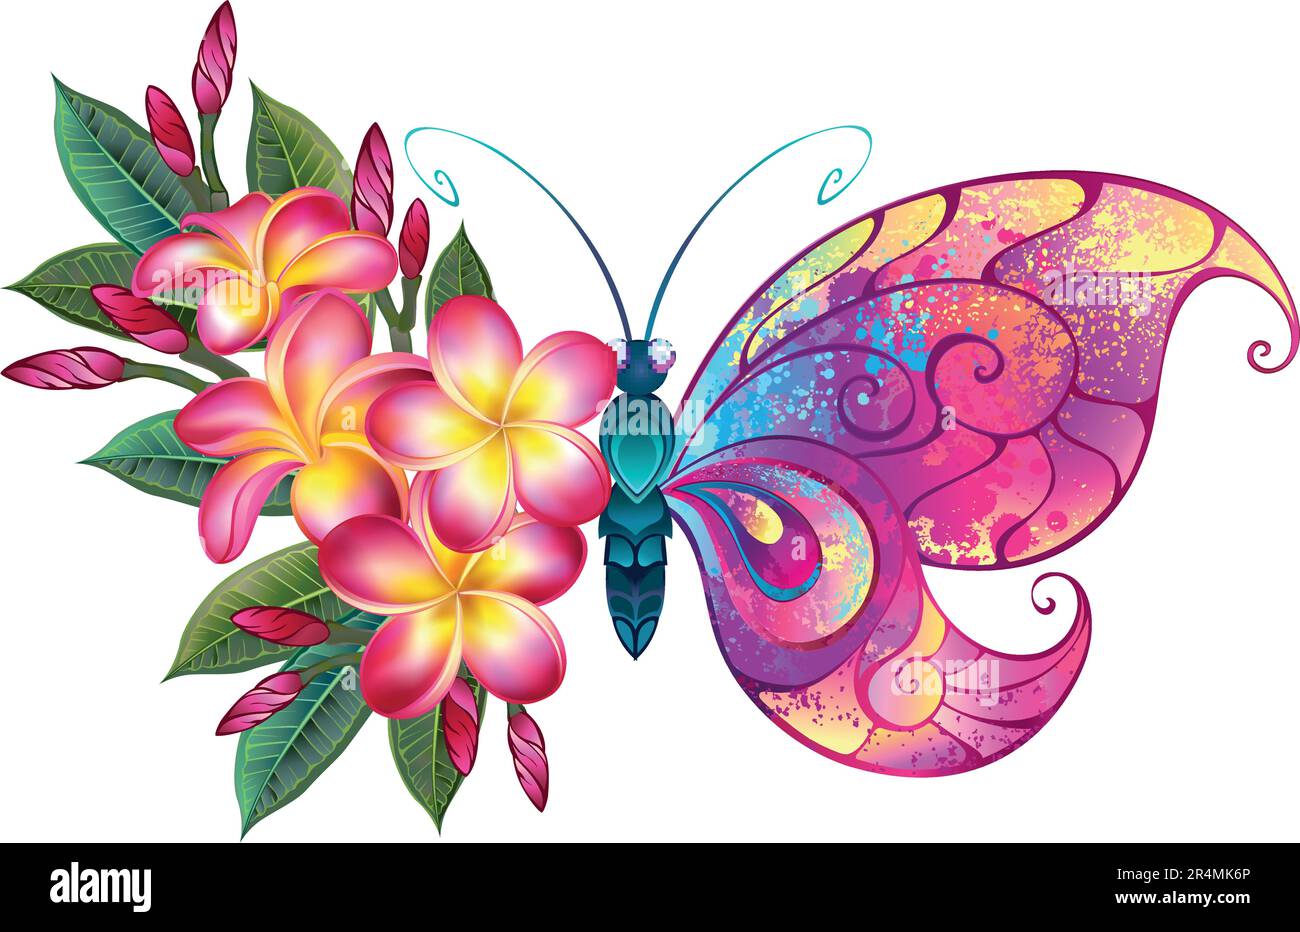 Geblümter Schmetterling mit Flügeln, die mit pinkfarbenen, gelben und blauen Tropfen bemalt sind, dekoriert mit pinkfarbener, blühender, detaillierter Plumeria. Fee Schmetterling. Stock Vektor